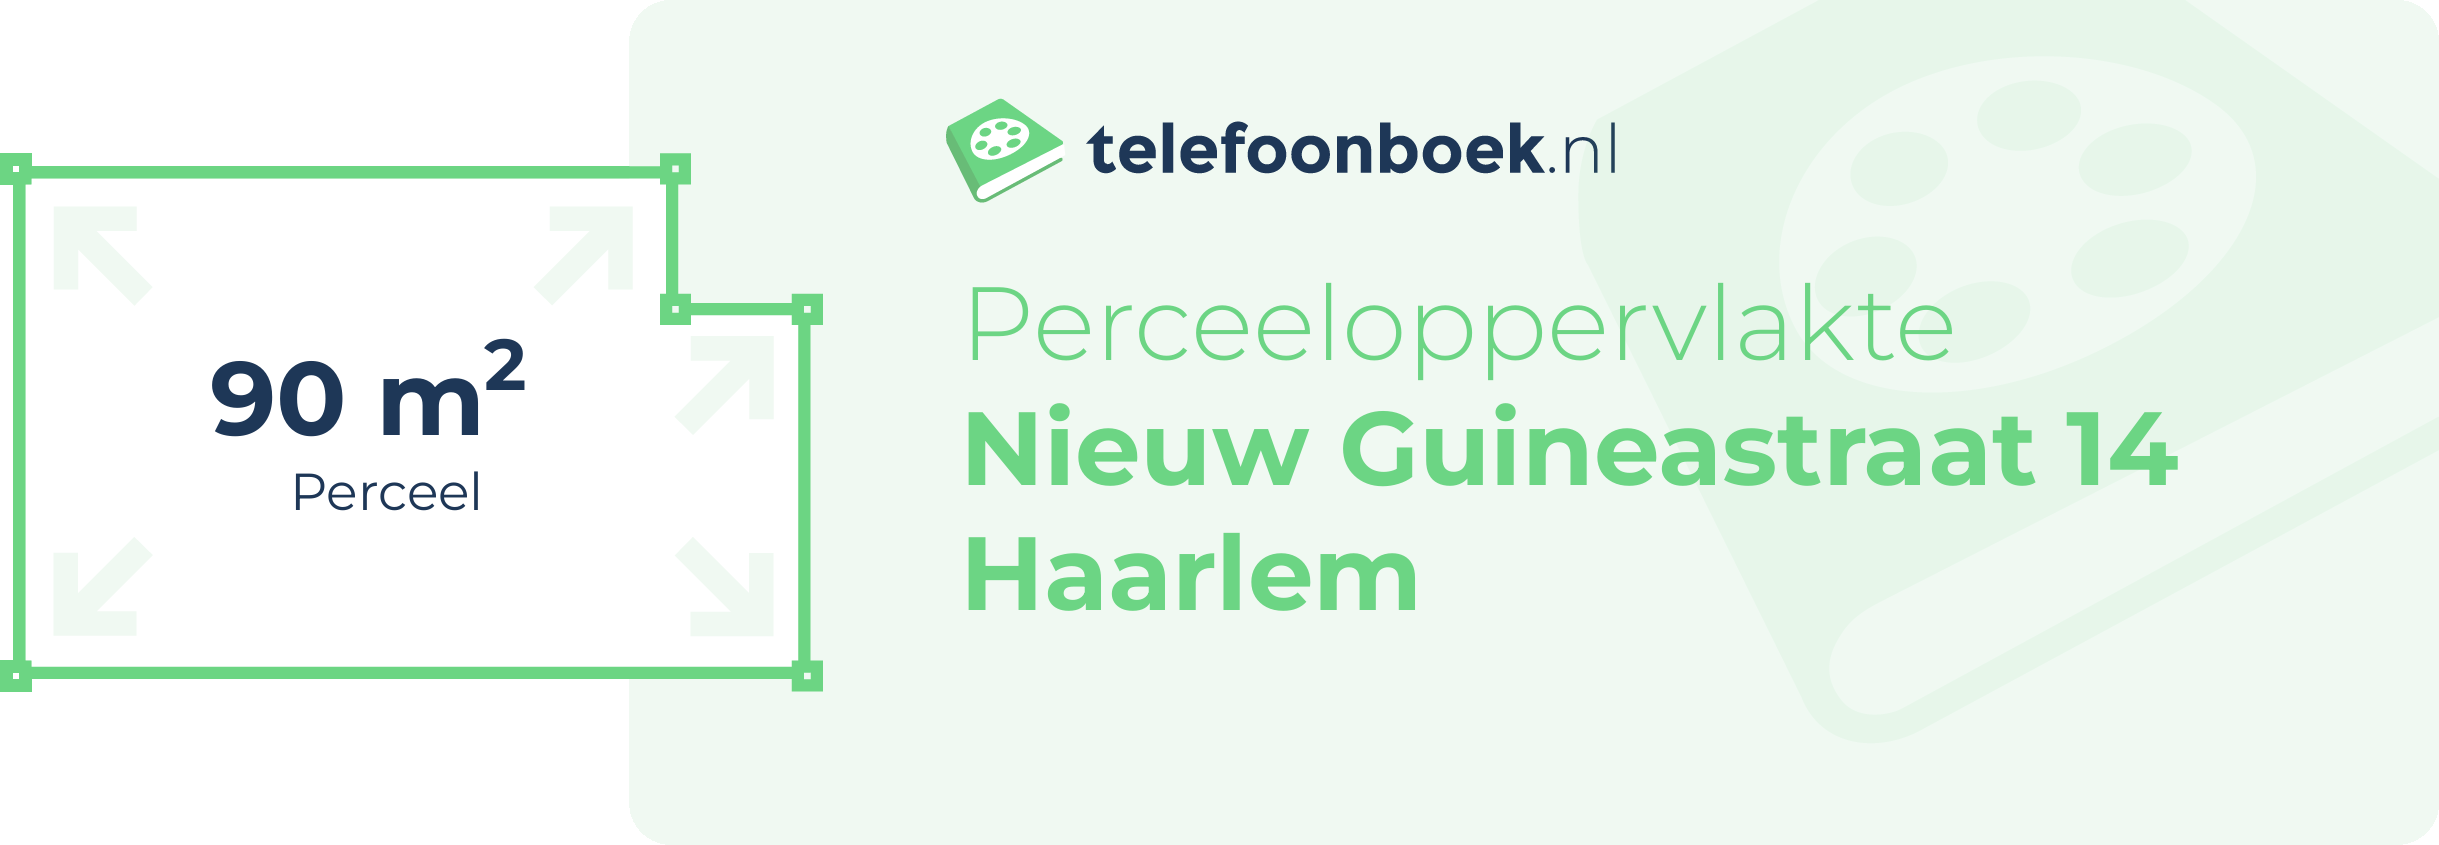 Perceeloppervlakte Nieuw Guineastraat 14 Haarlem